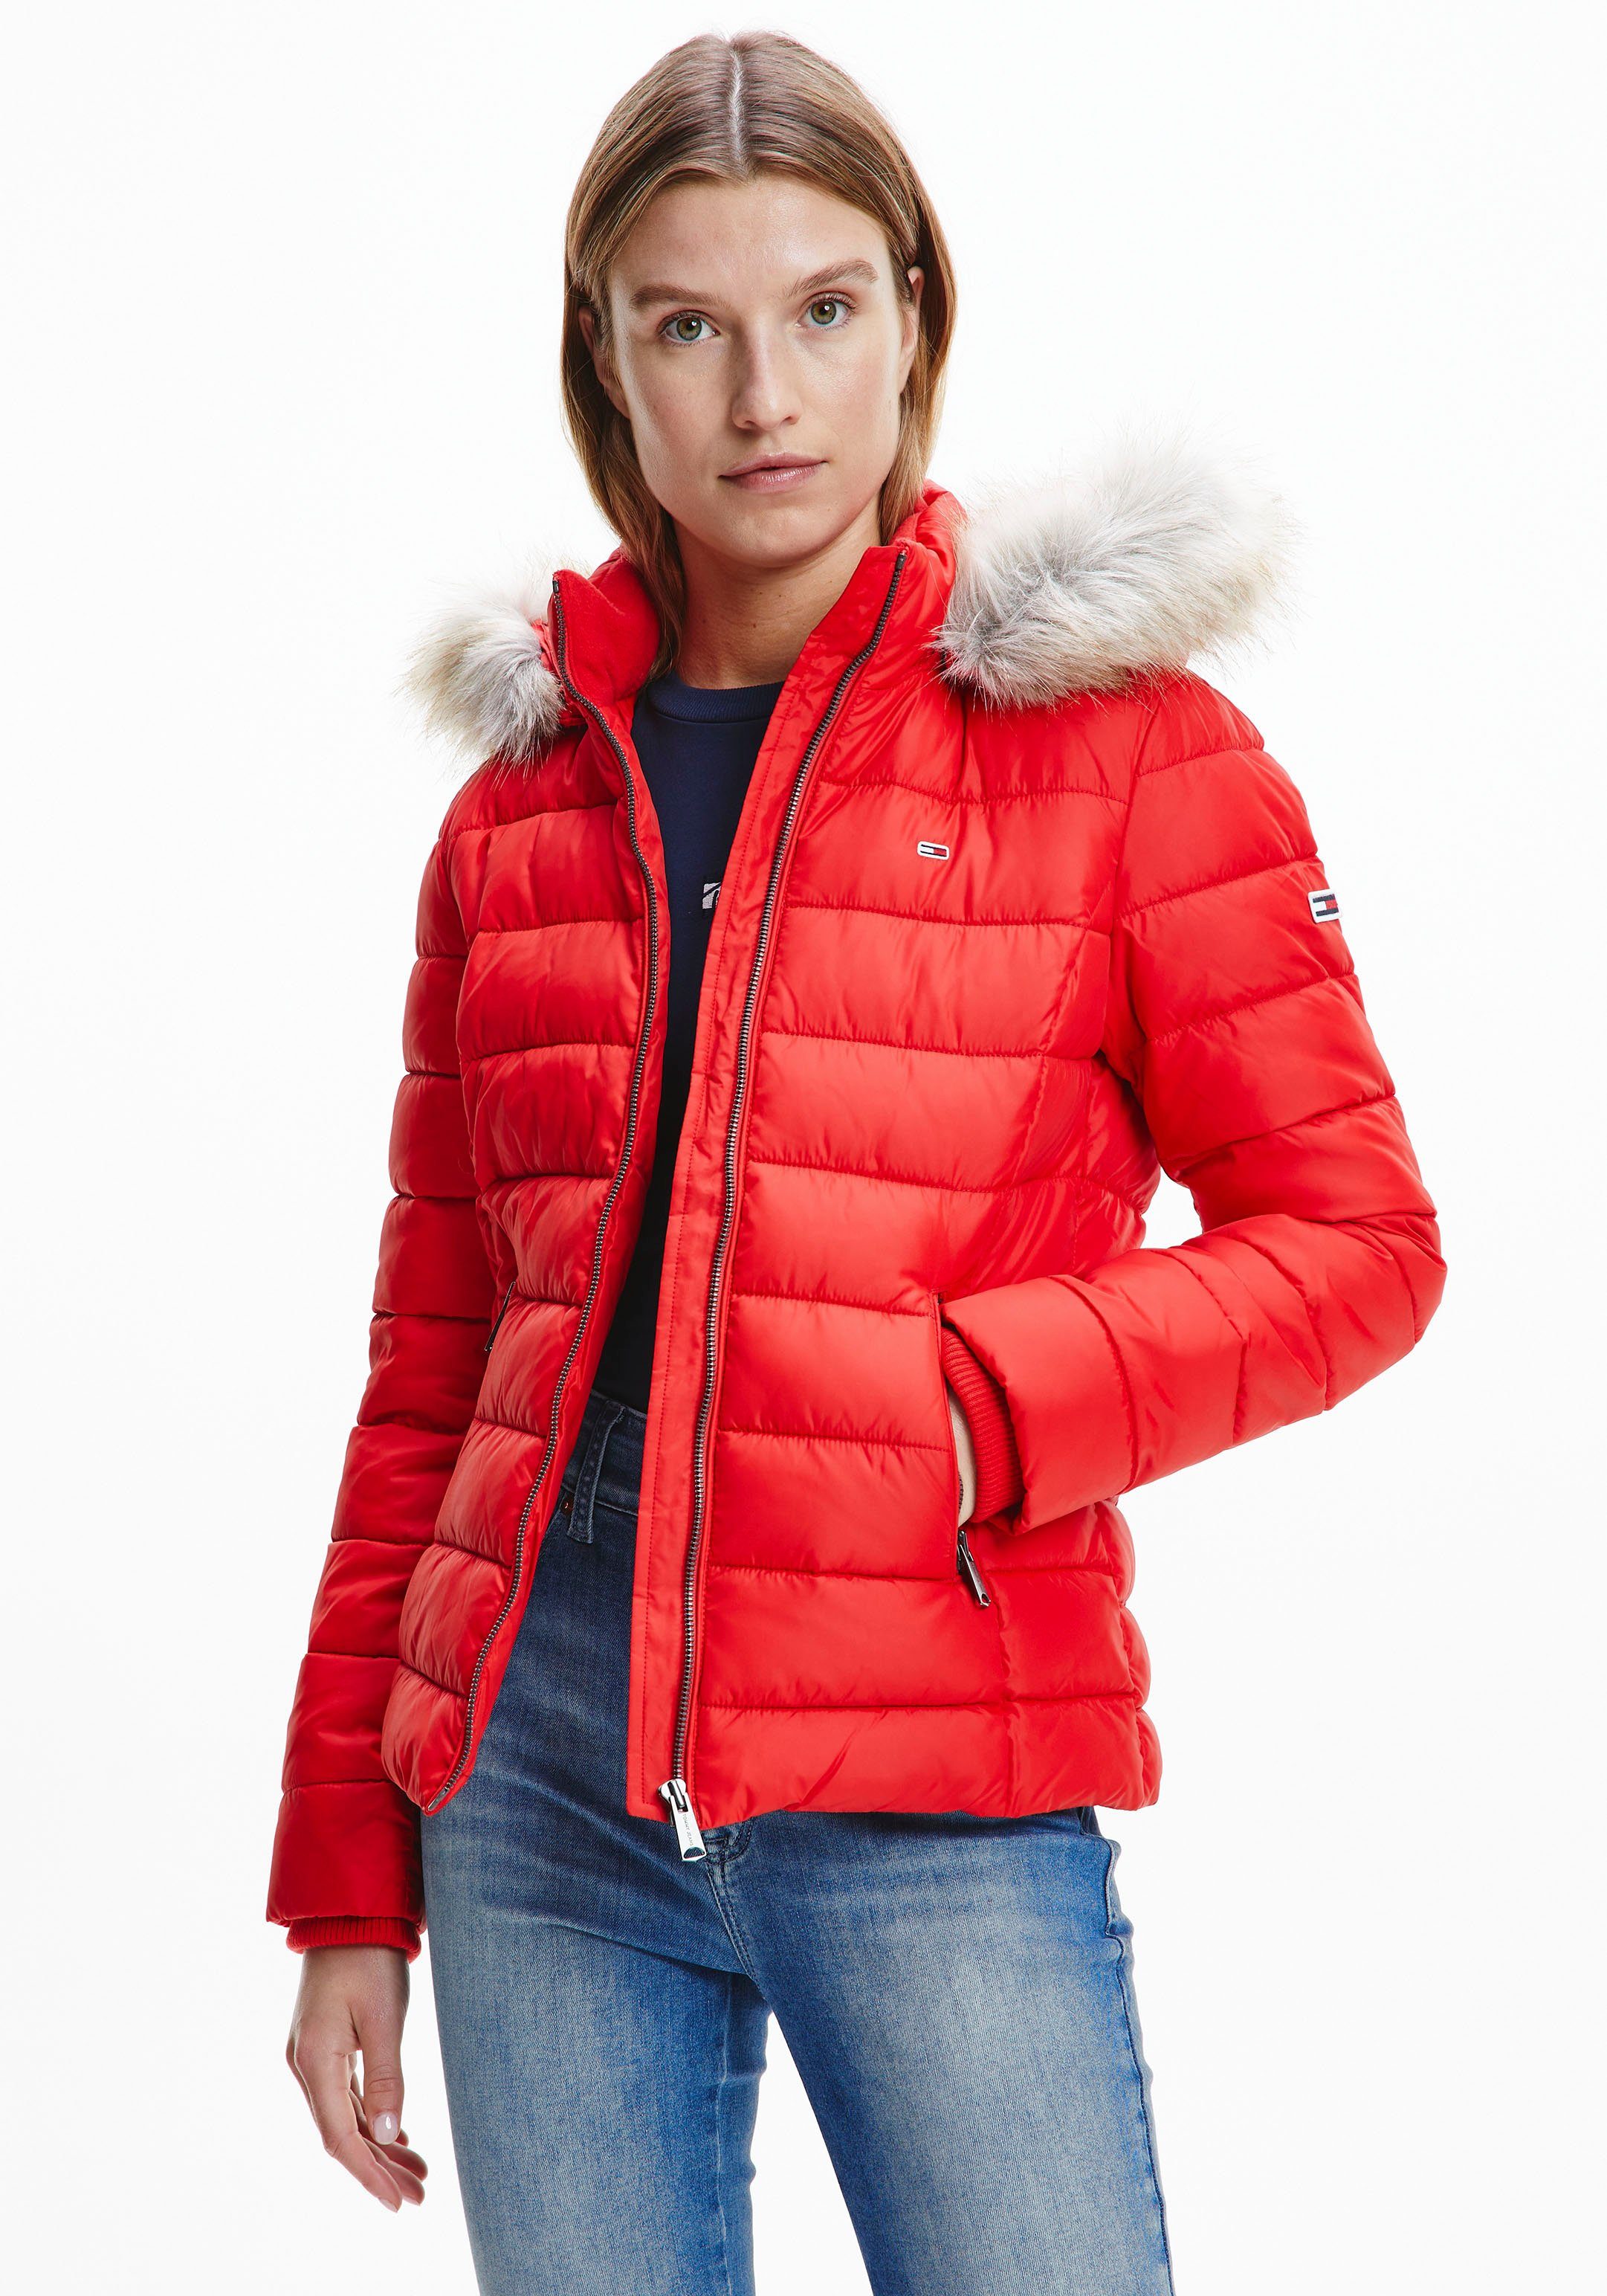 Rote Tommy Hilfiger Jacken für Damen online kaufen | OTTO